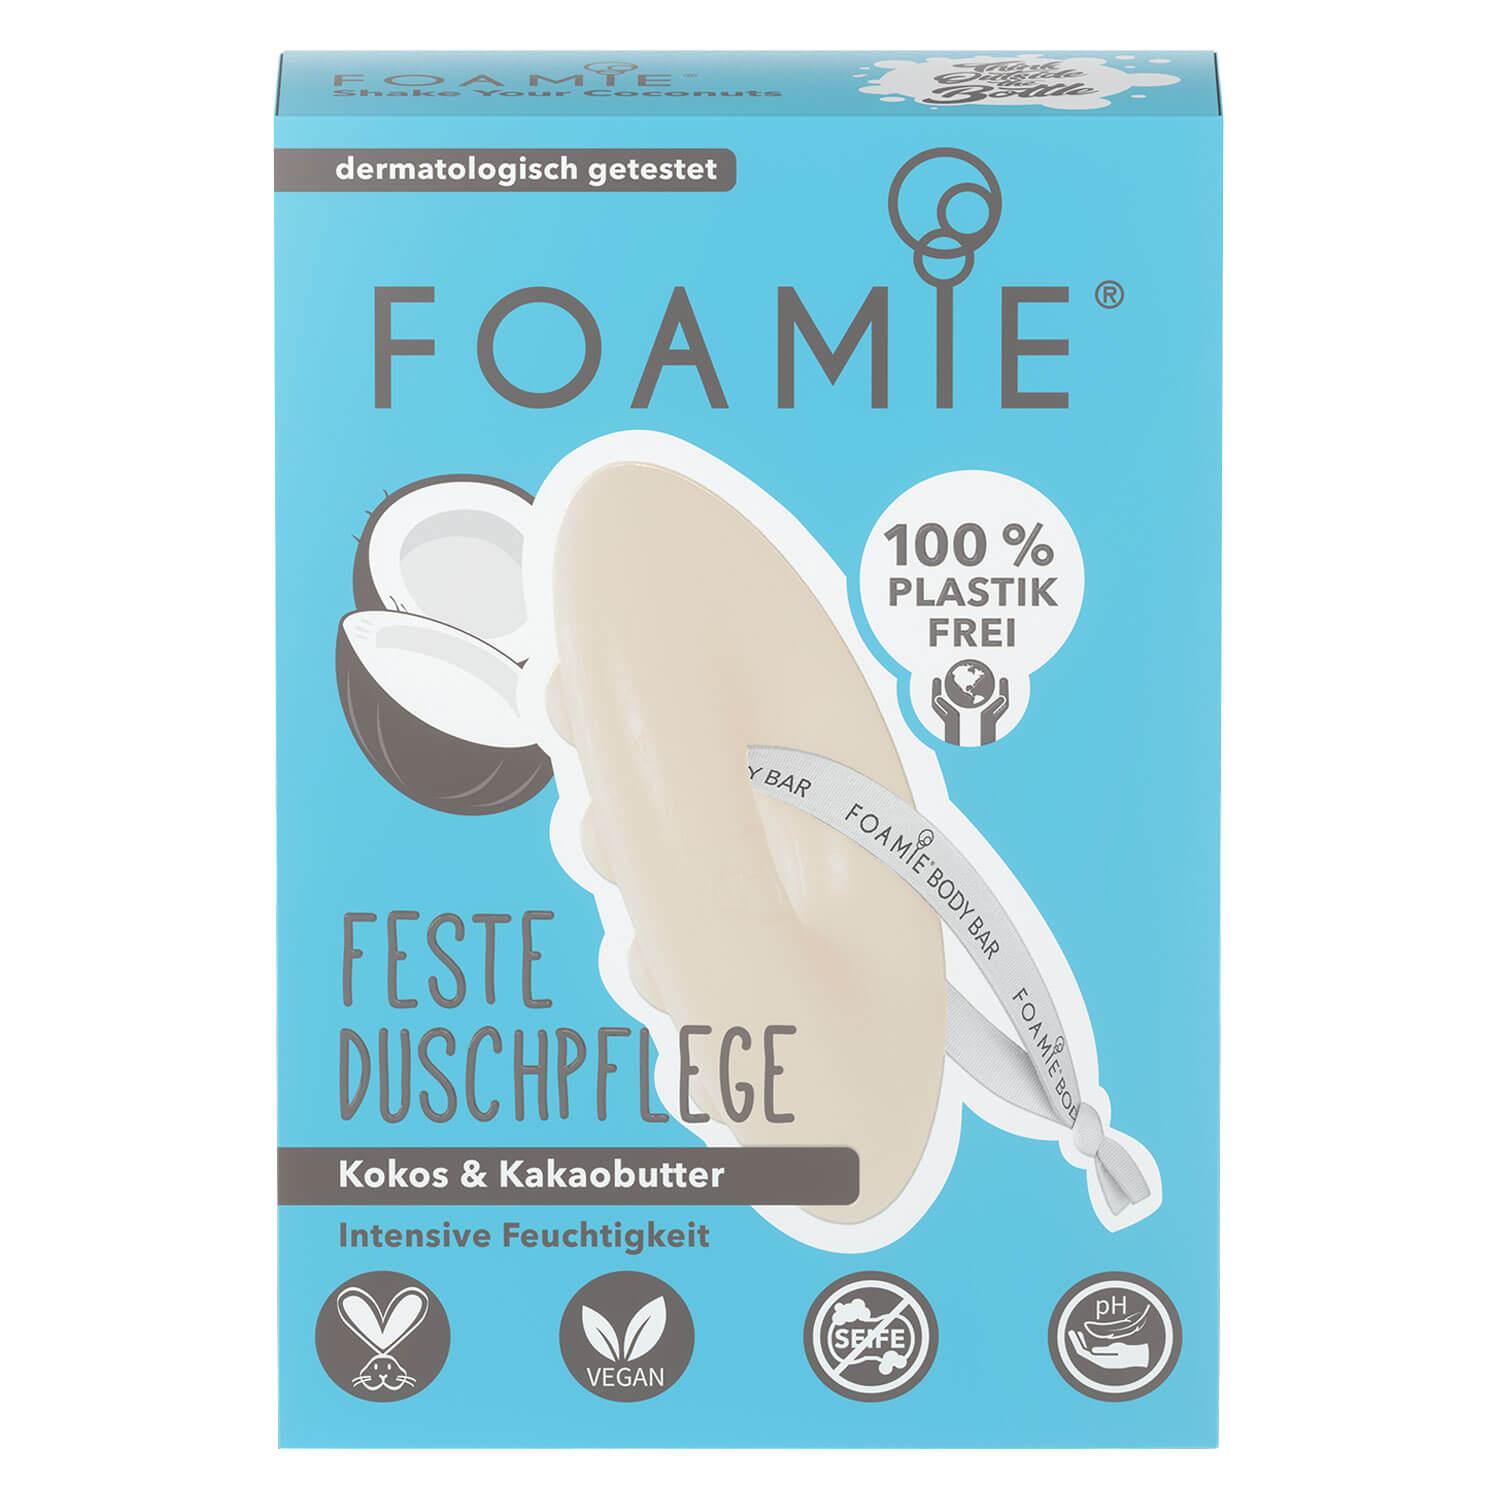 Foamie - Feste Duschpflege Shake Your Coconuts